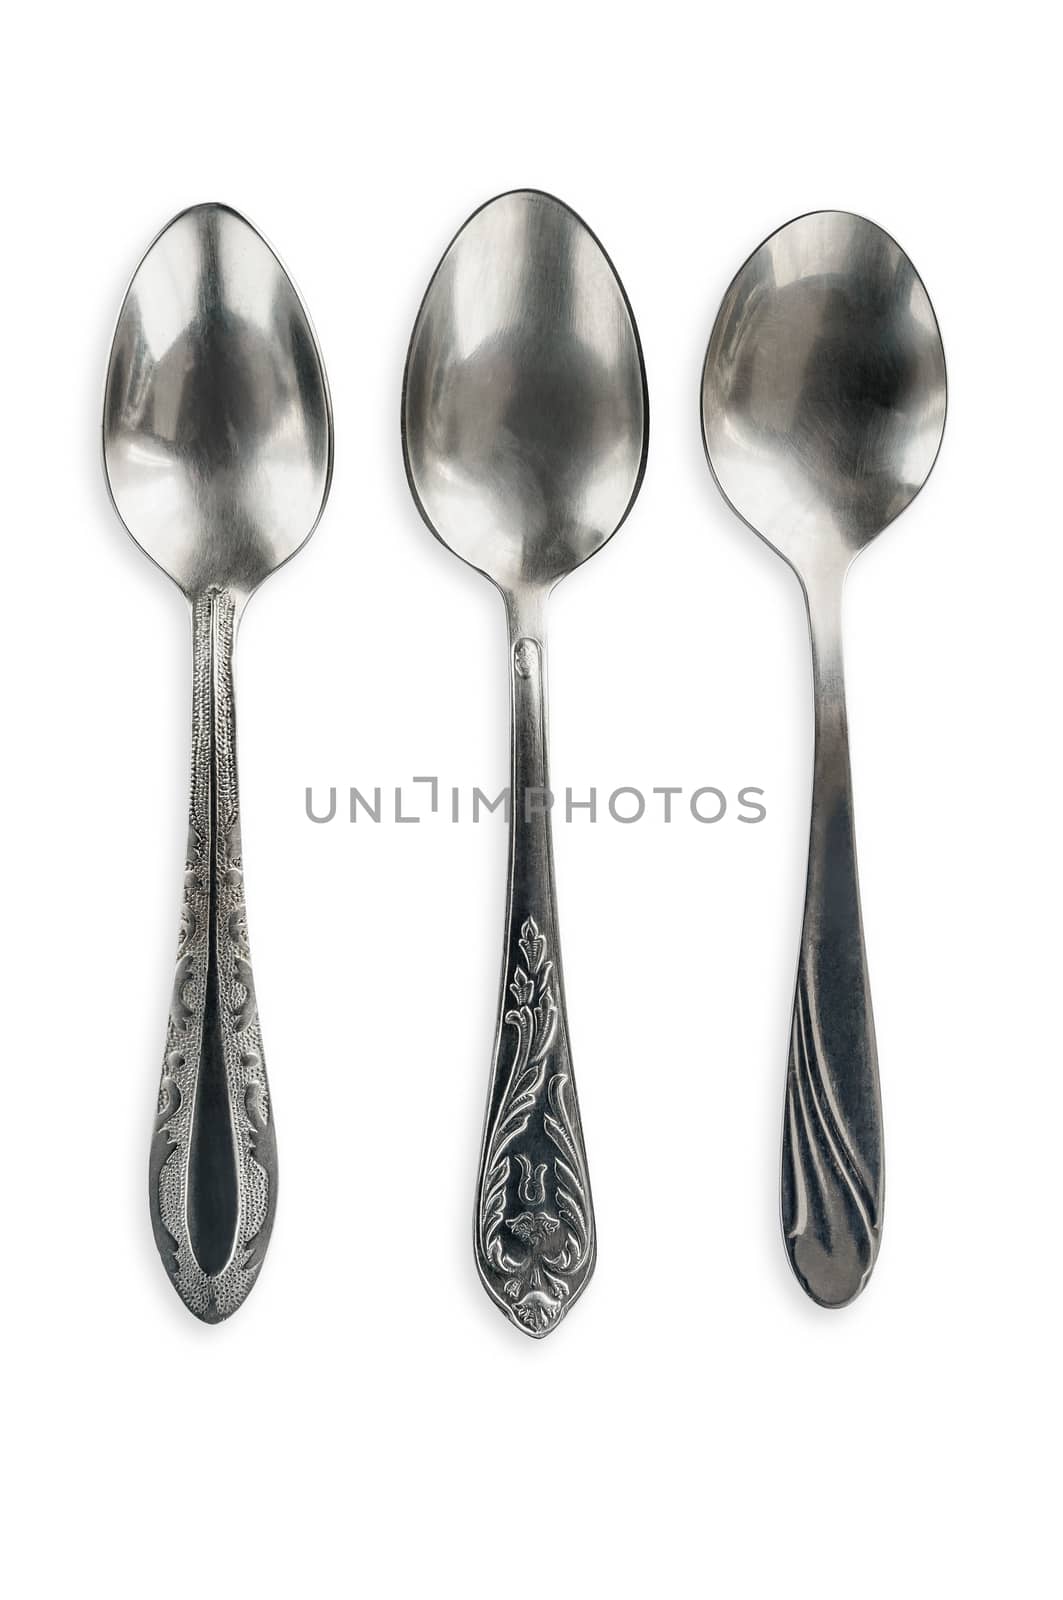 Three different kind of vintage soviet tea spoons